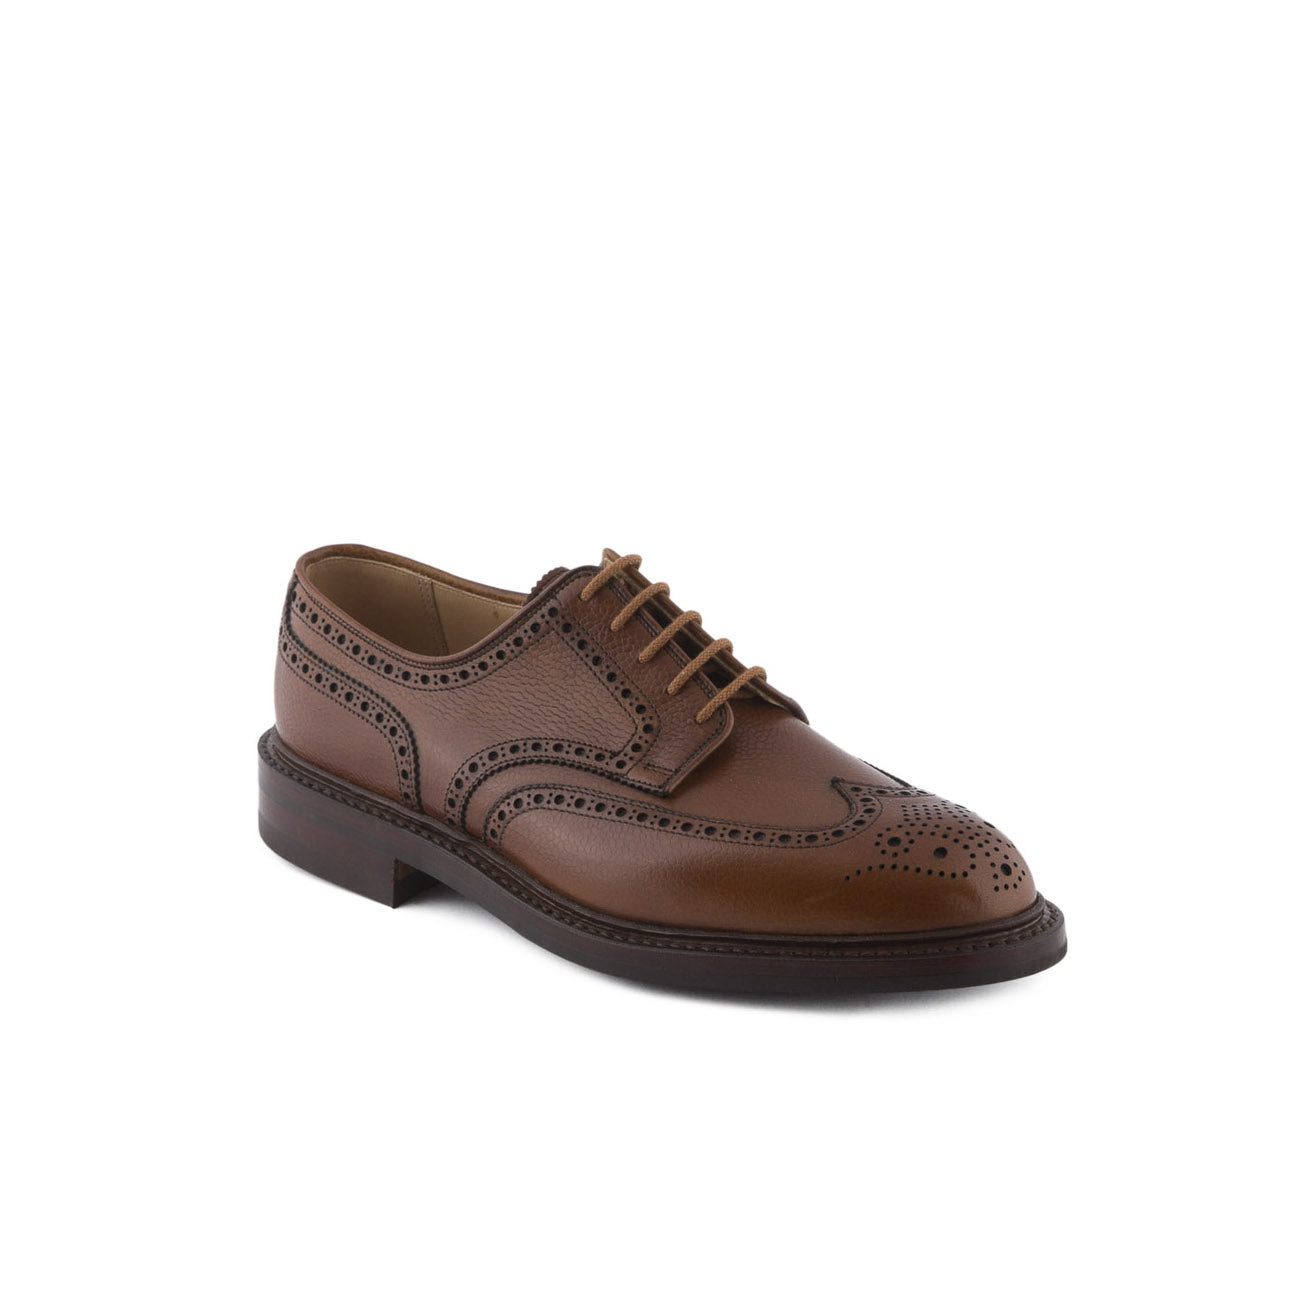 Crockett & Jones Pembroke tan scotch grain calf laced up derby shoe